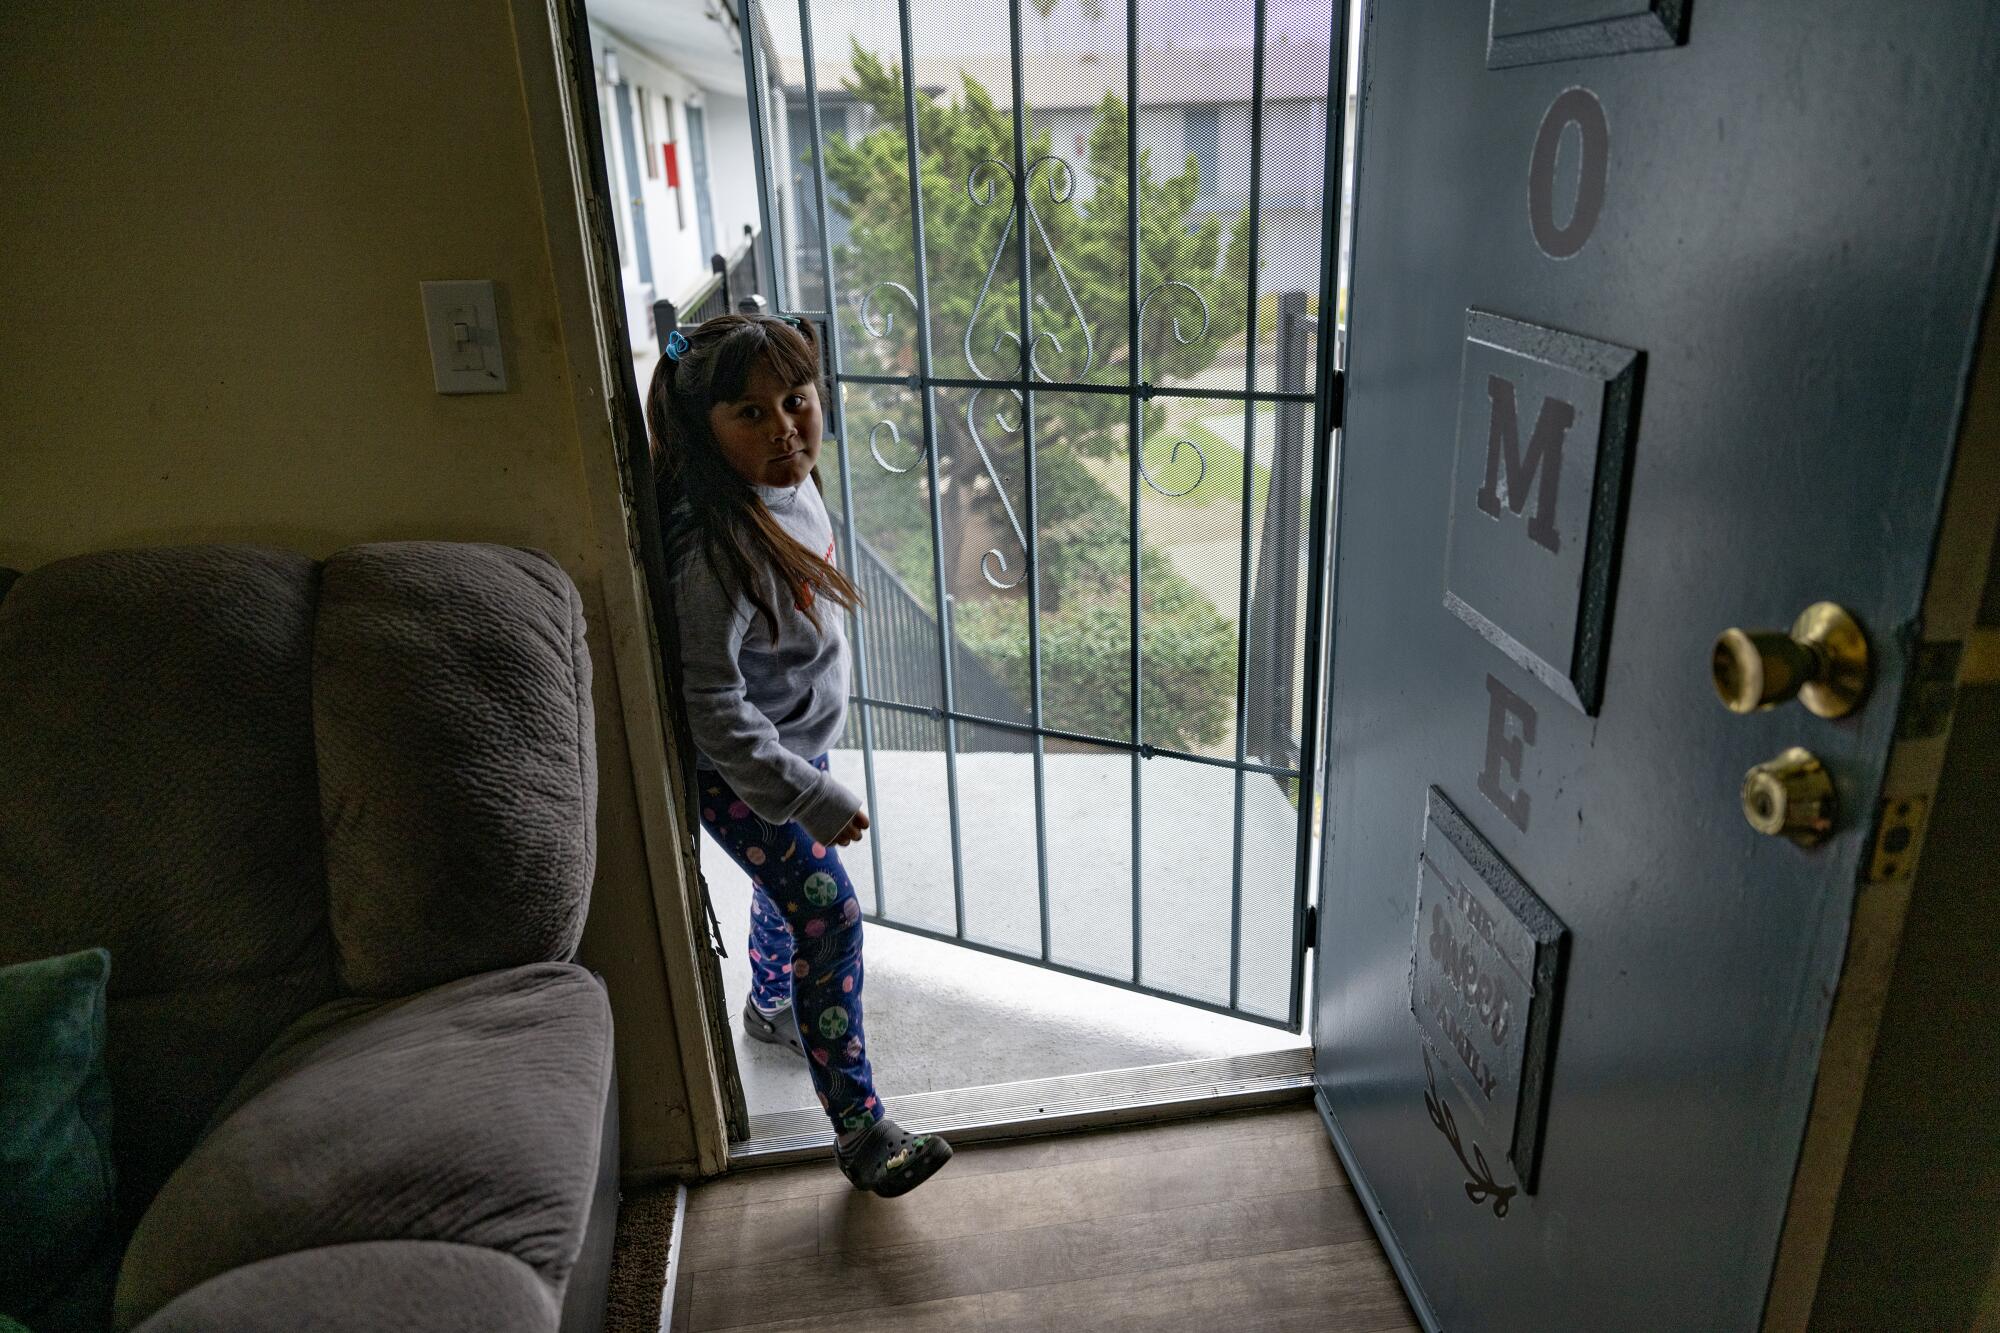 A girl enters an apartment through a screen door.